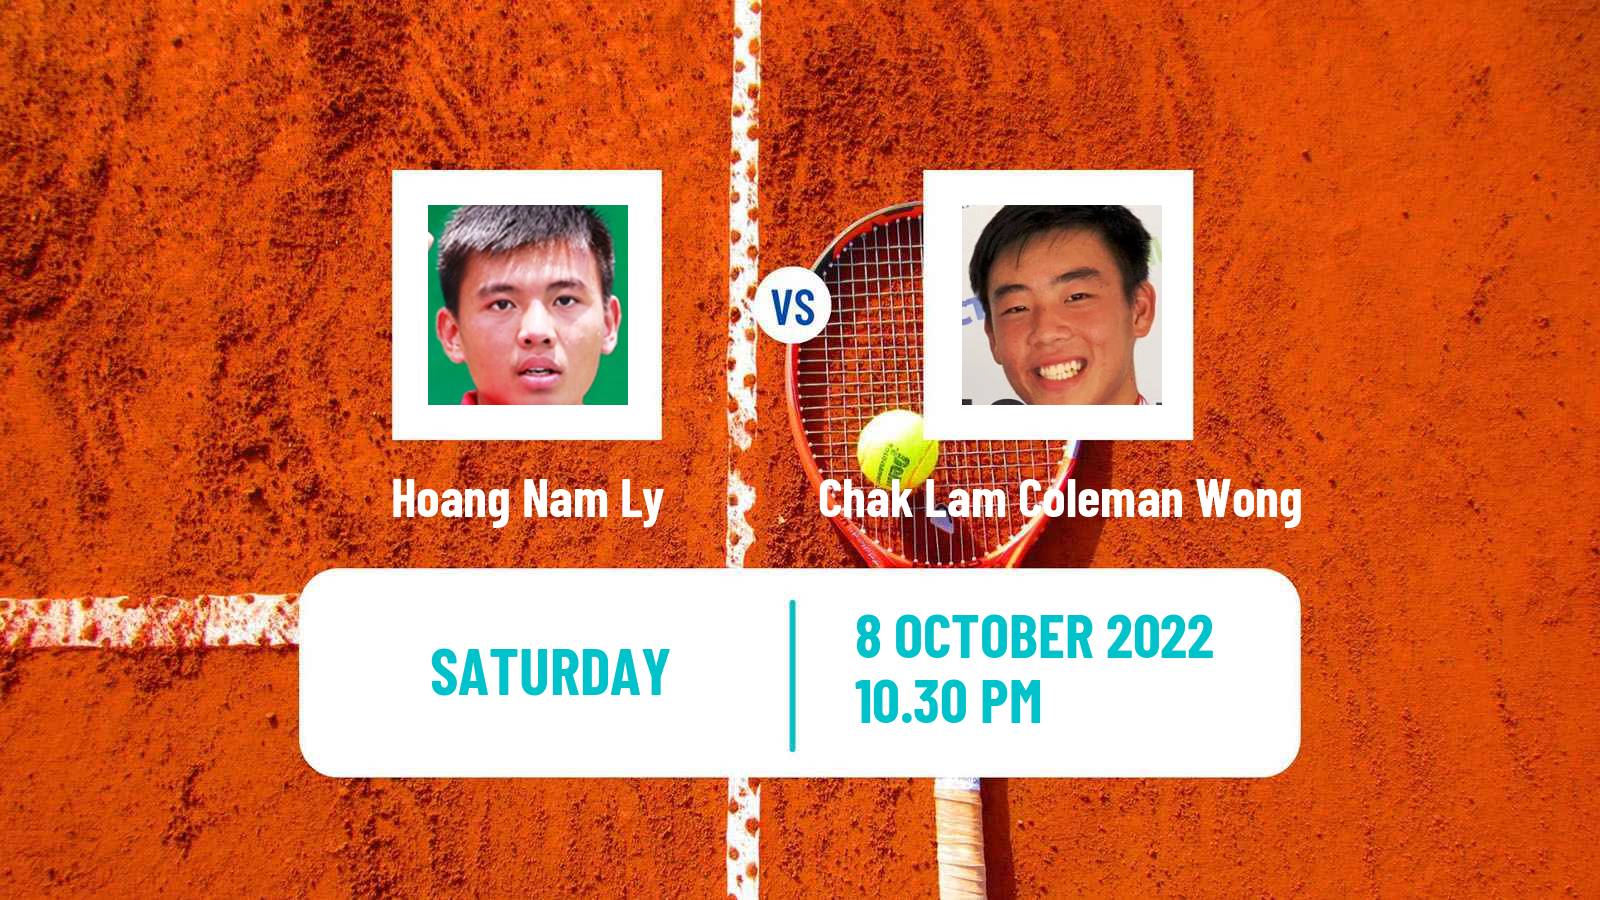 Tennis ITF Tournaments Hoang Nam Ly - Chak Lam Coleman Wong